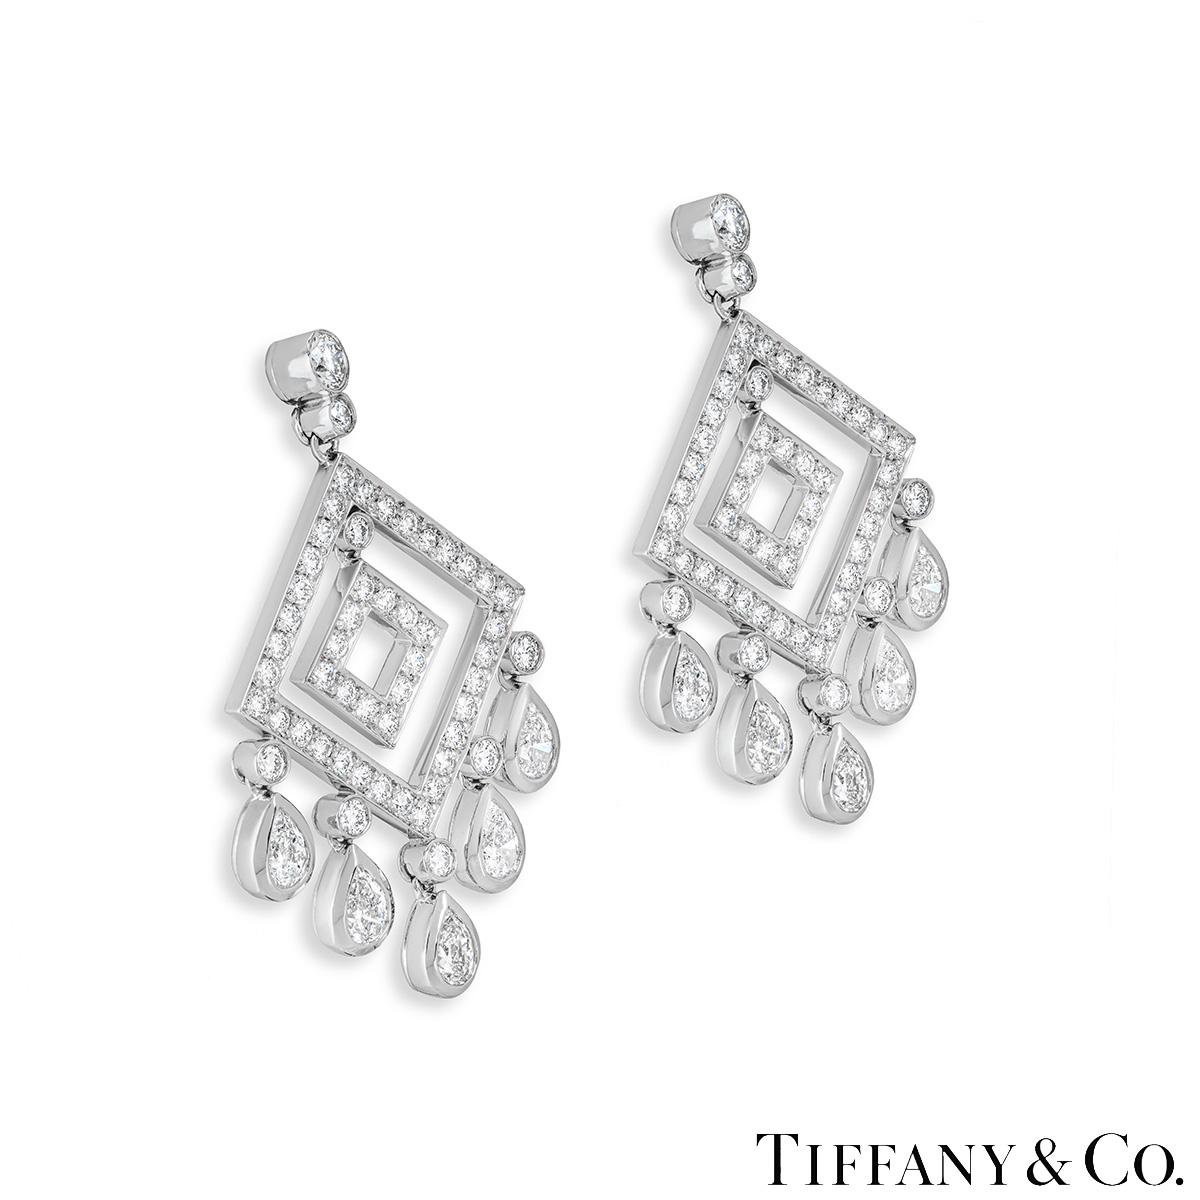 Ein funkelndes Paar Diamantohrringe aus Platin von Tiffany & Co. aus der Legacy Collection. Die Ohrringe sind oben mit zwei abgestuften runden Diamanten im Brillantschliff besetzt, die zu einem durchbrochenen Drachenmotiv mit einem frei beweglichen